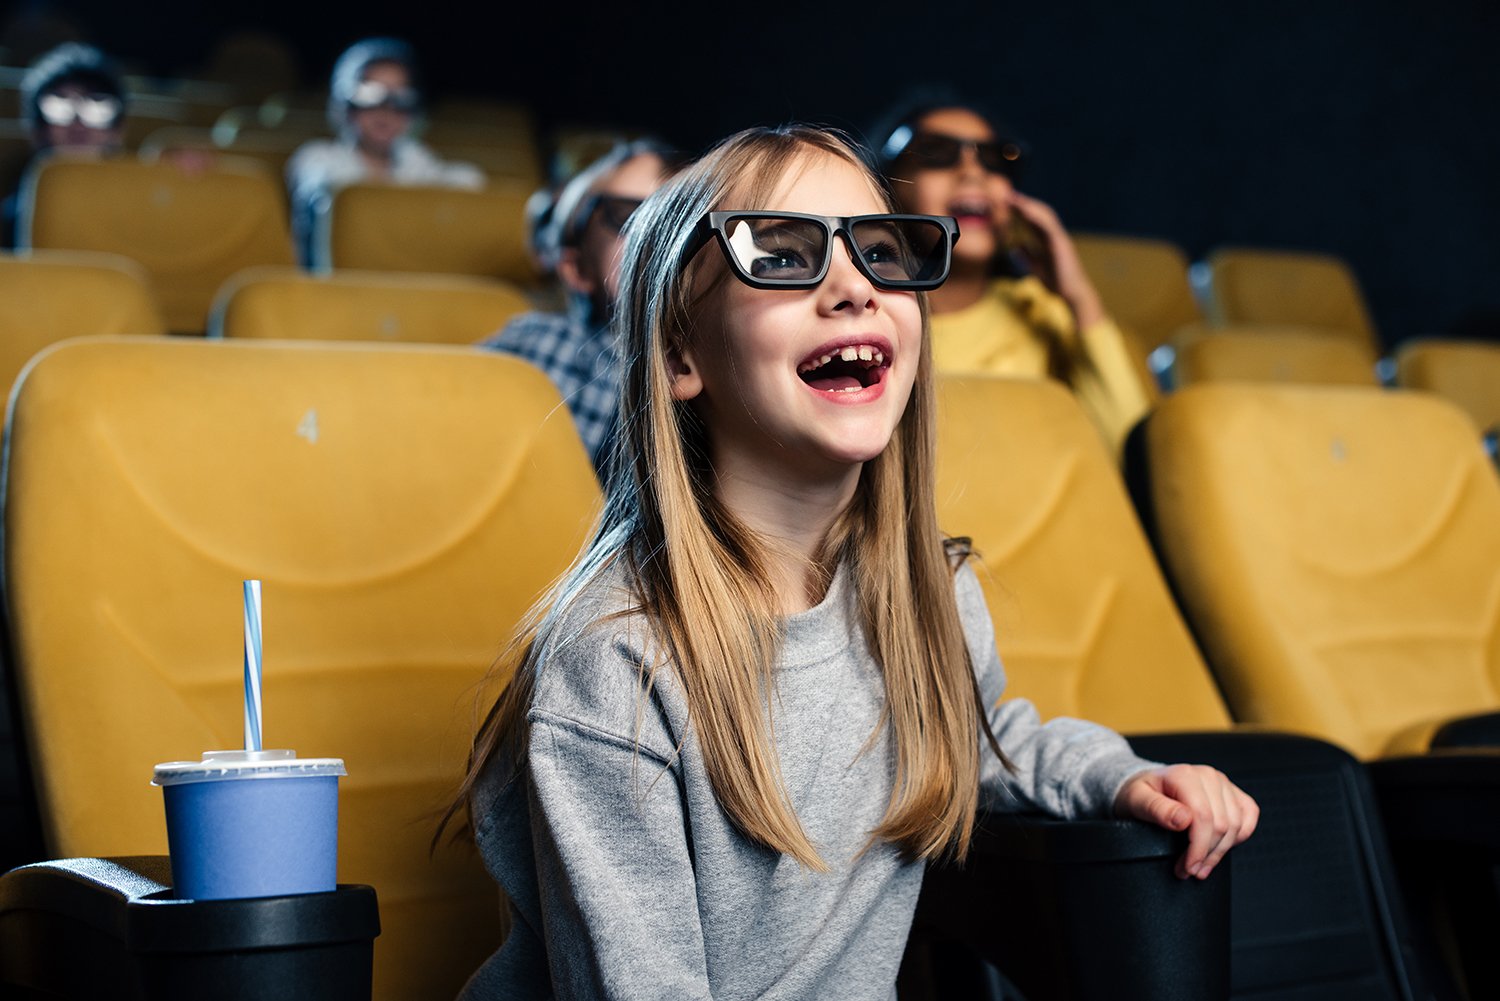 Kinoer og filmfestivaler har plikter overfor publikum. Les mer om disse her. Bildet viser en jente på kino med 3D-briller. Foto Unsplash